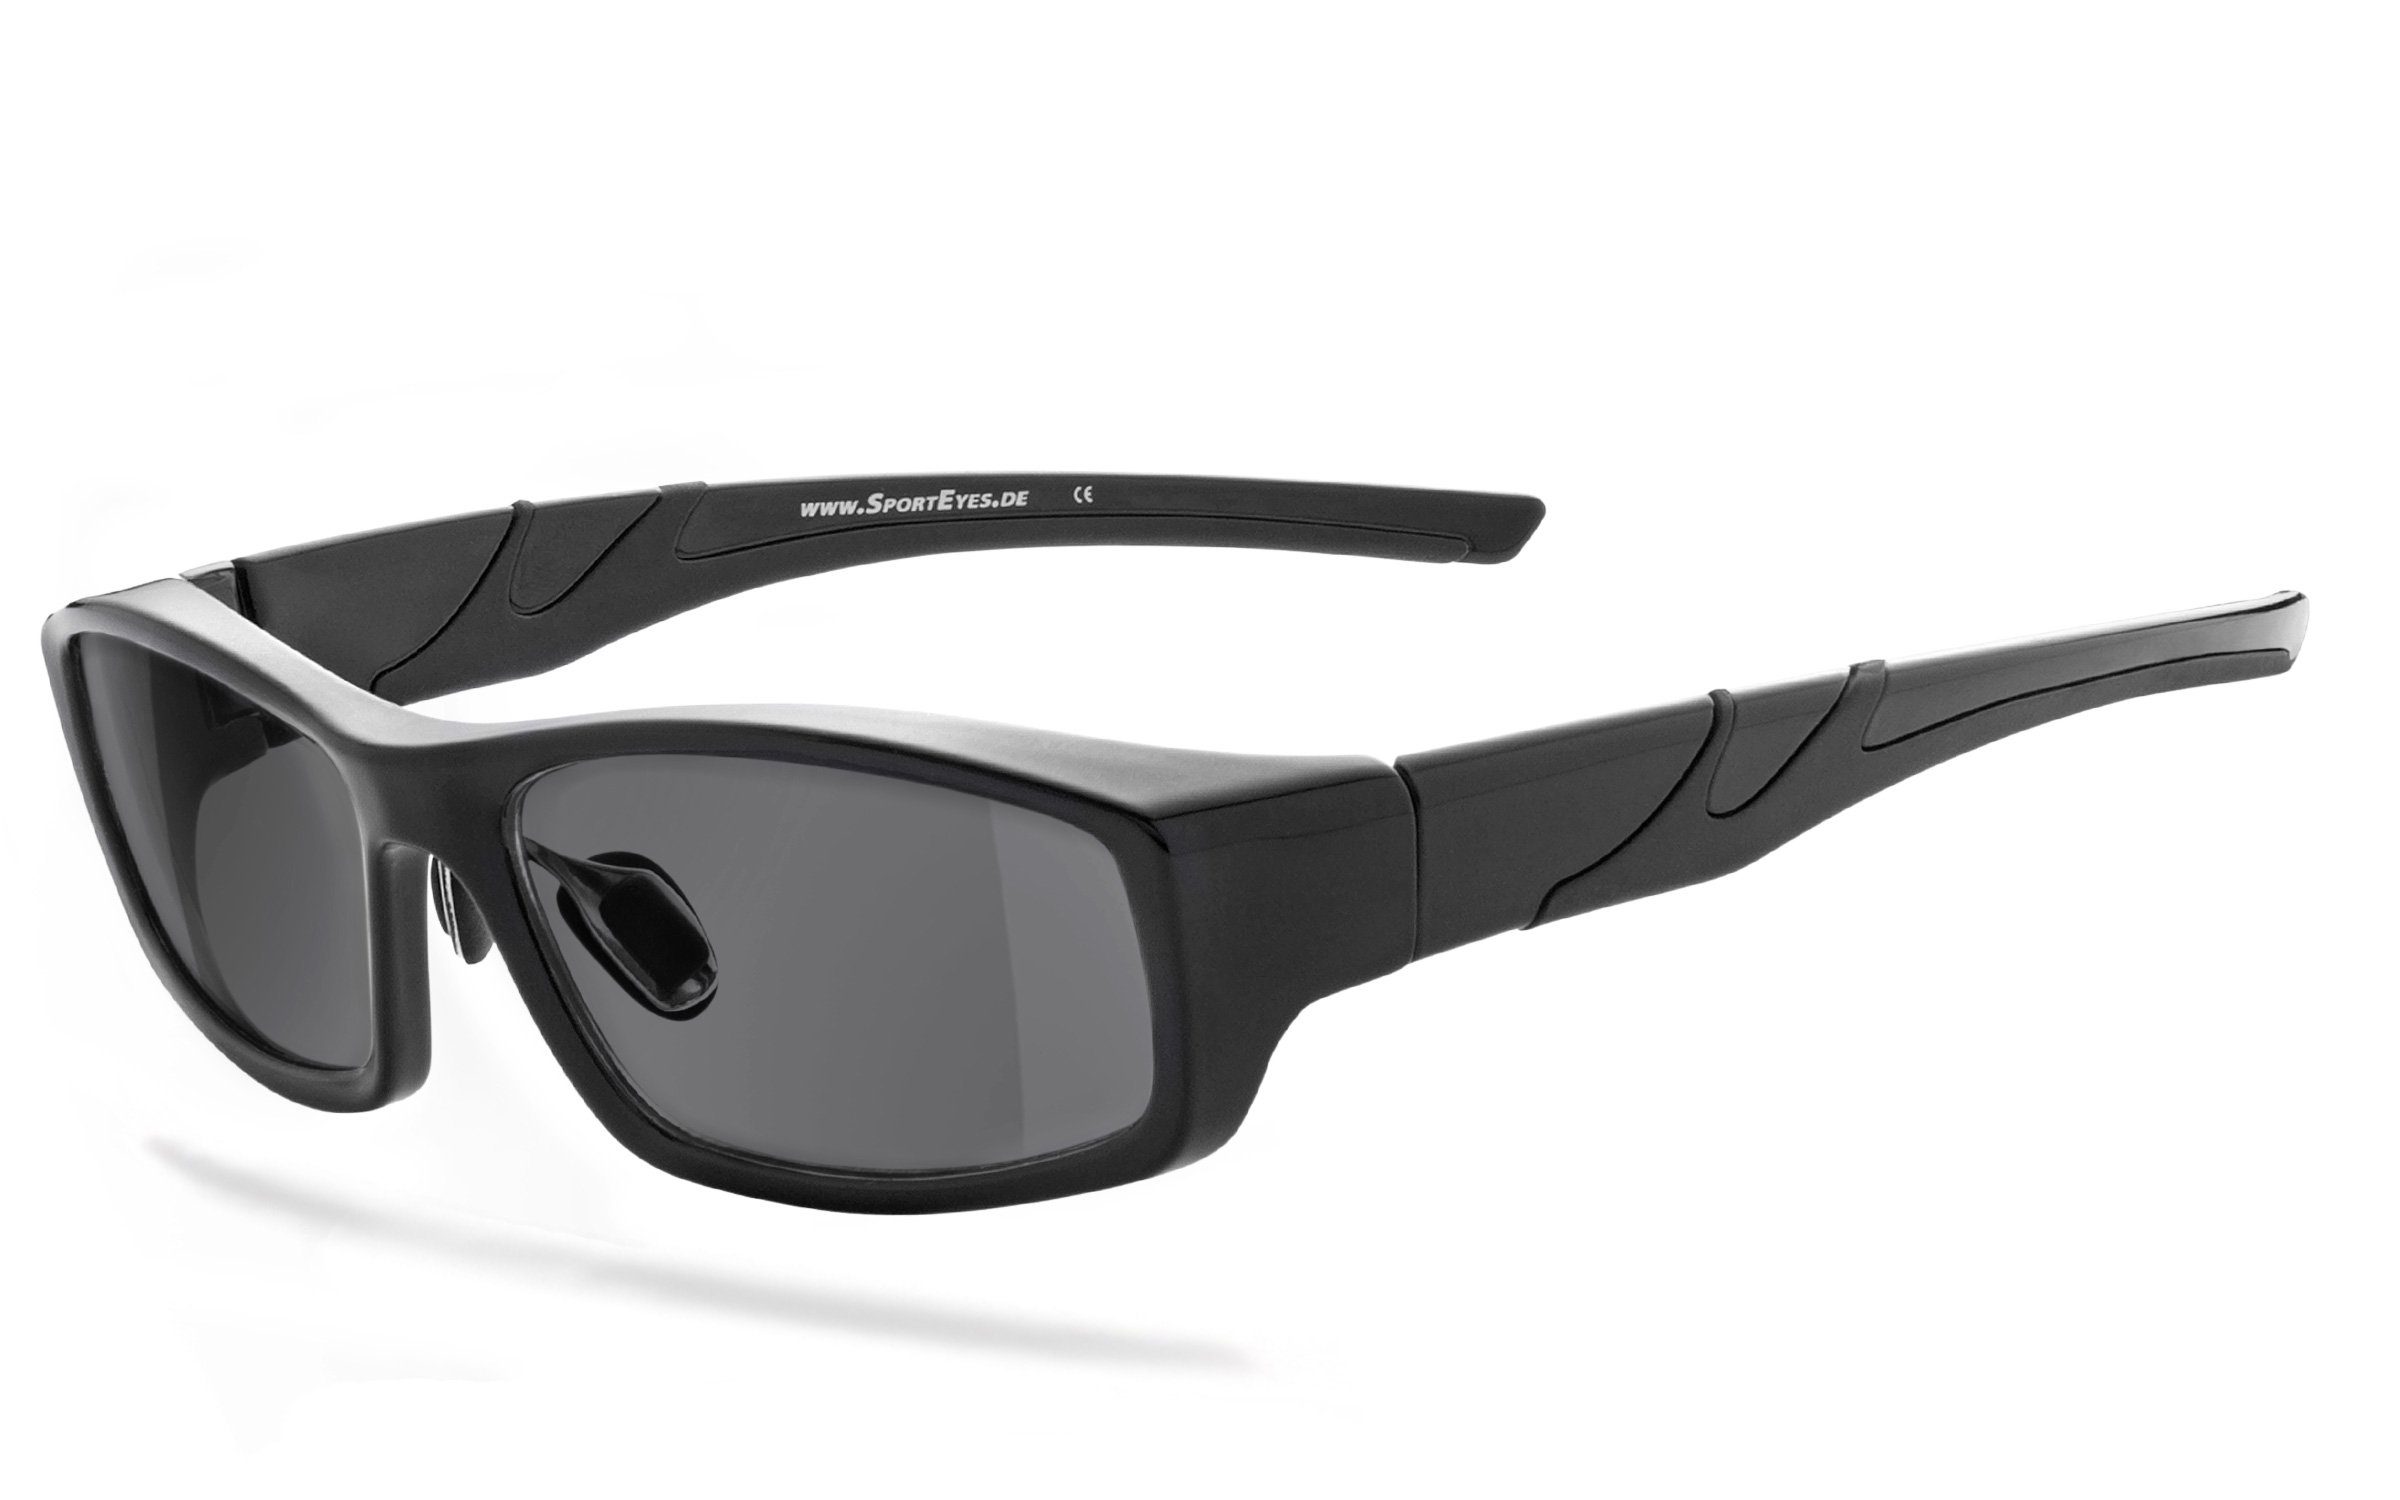 Gläser selbsttönende selbsttönend Sonnenbrille - SportEyes HSE - schnell 3040sb